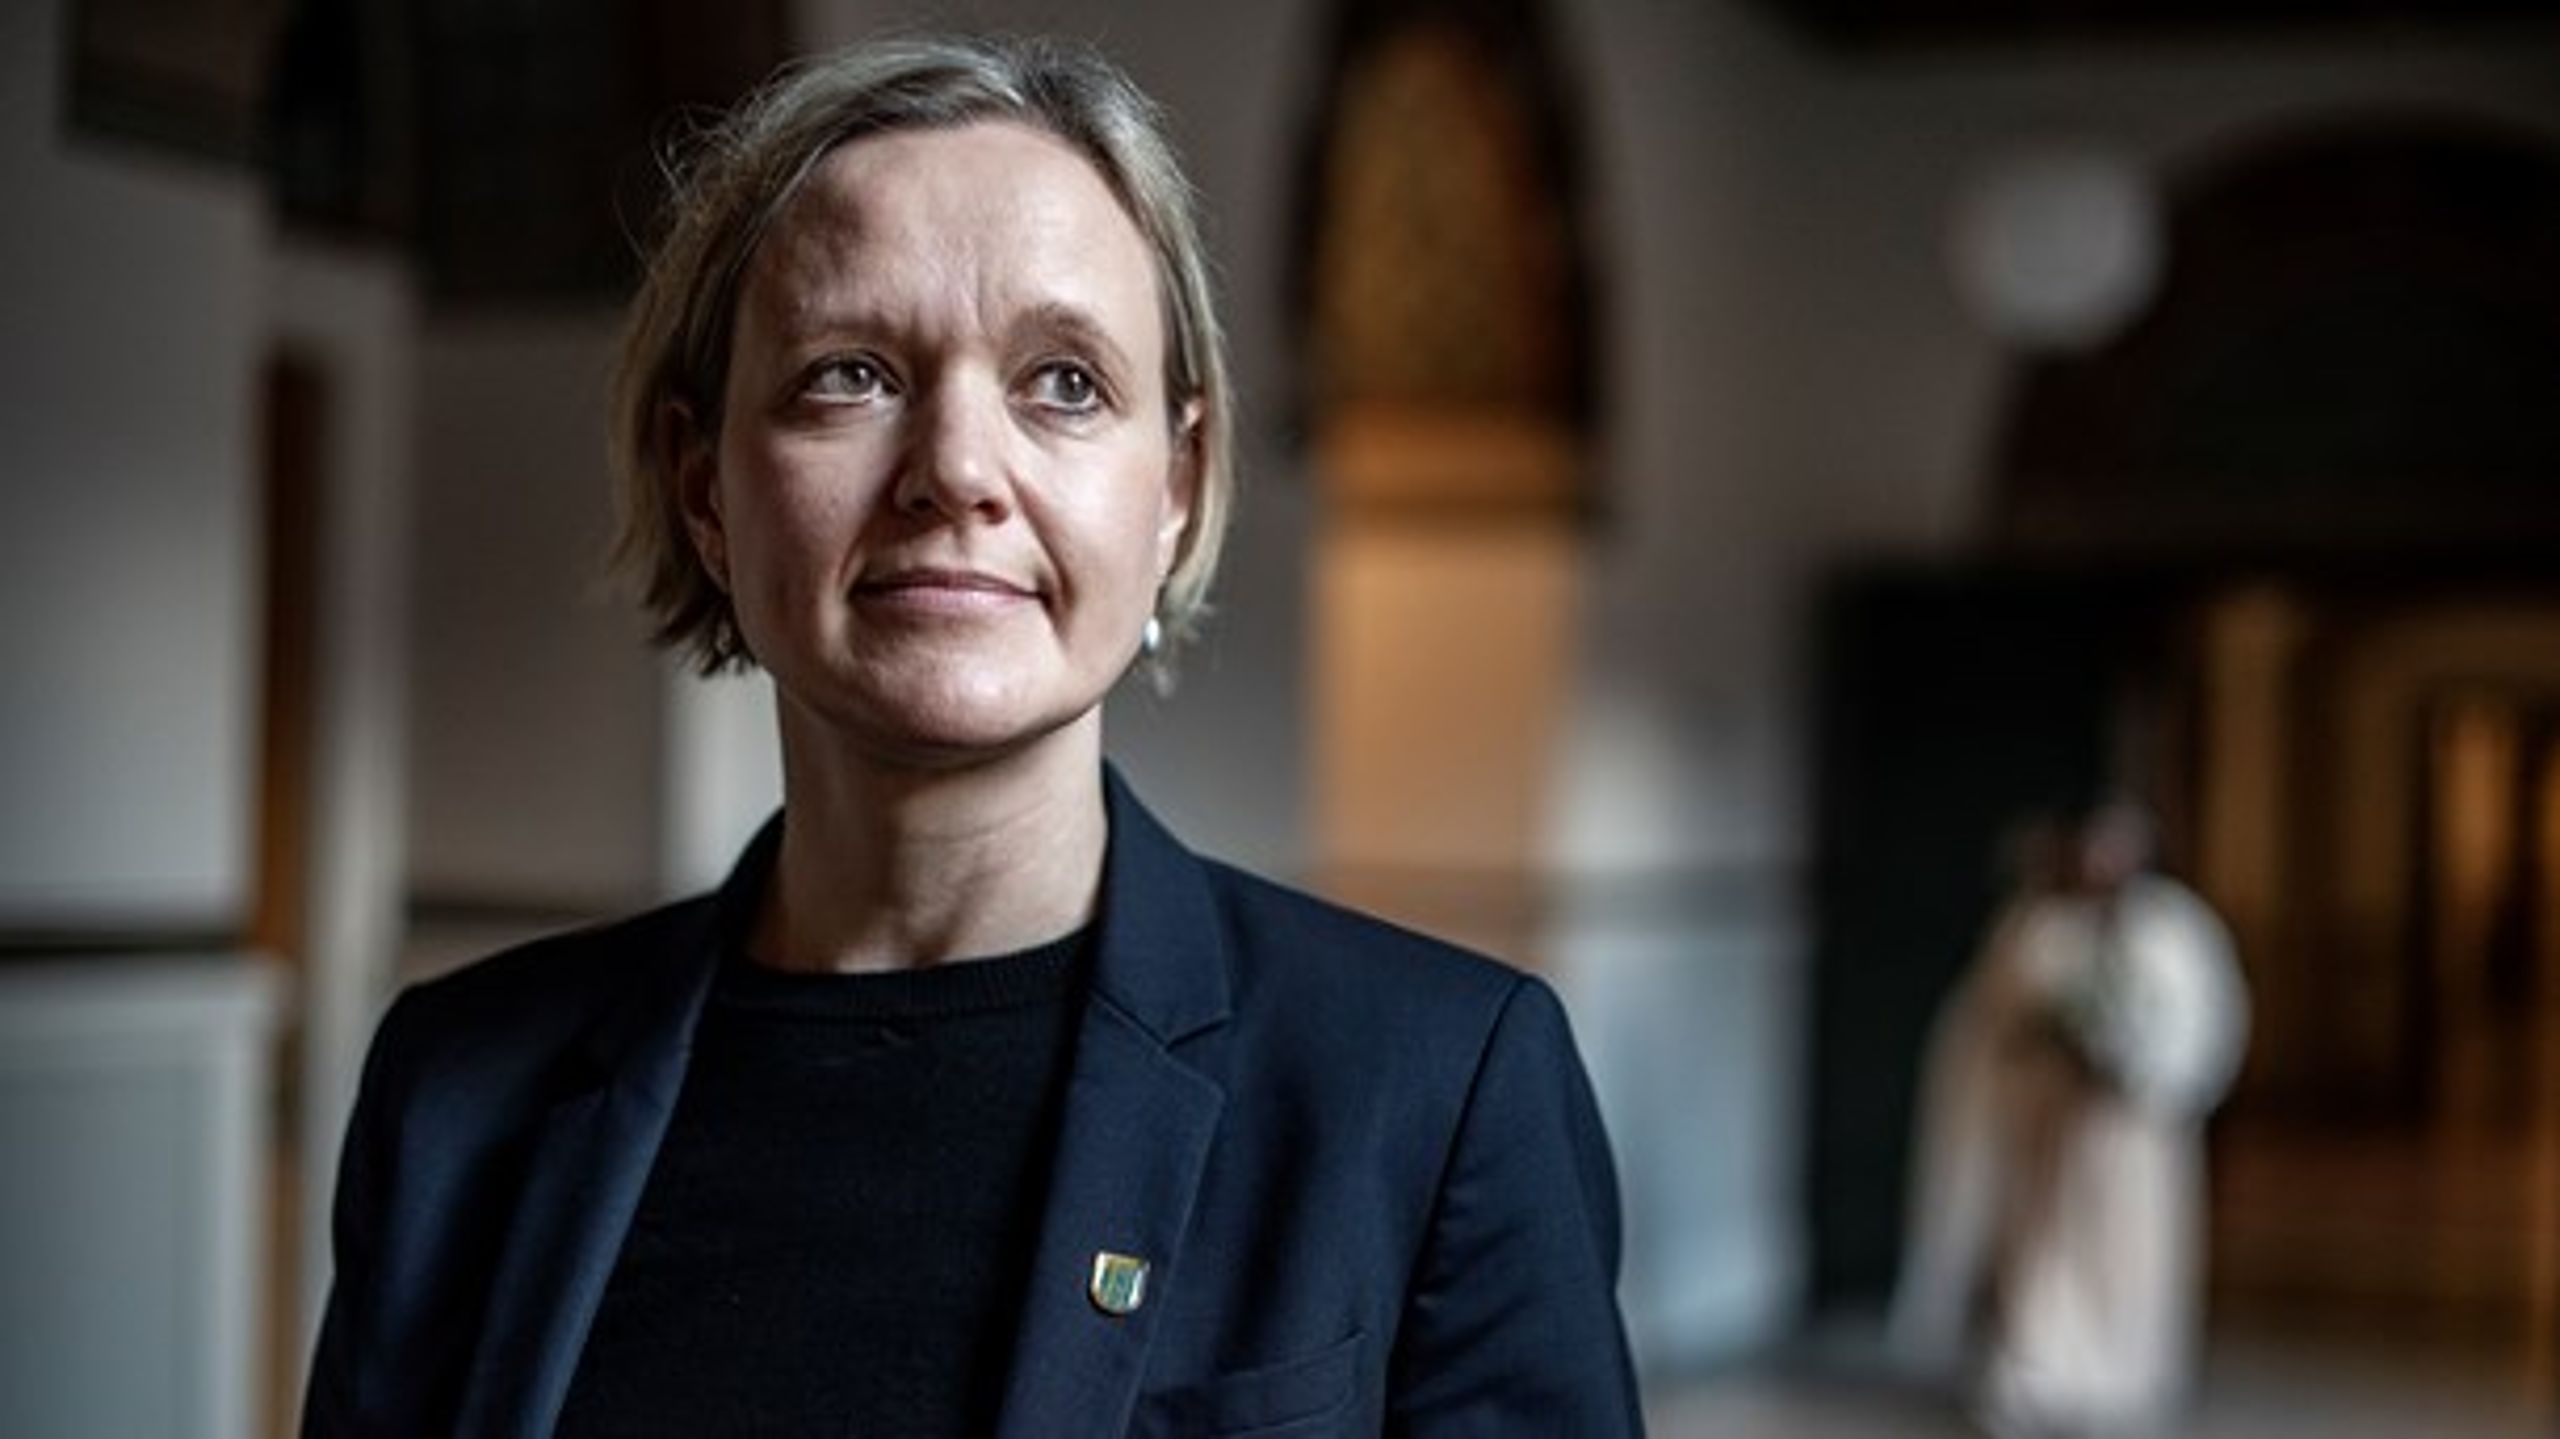 Det er blandt andre Cecilia Lonning-Skovgaard (V), borgmester
for Beskæftigelses- og Integrationsforvaltningen i Københavns Kommune, som har taget initiativ til at oprette en demensvenlig bydel i København.